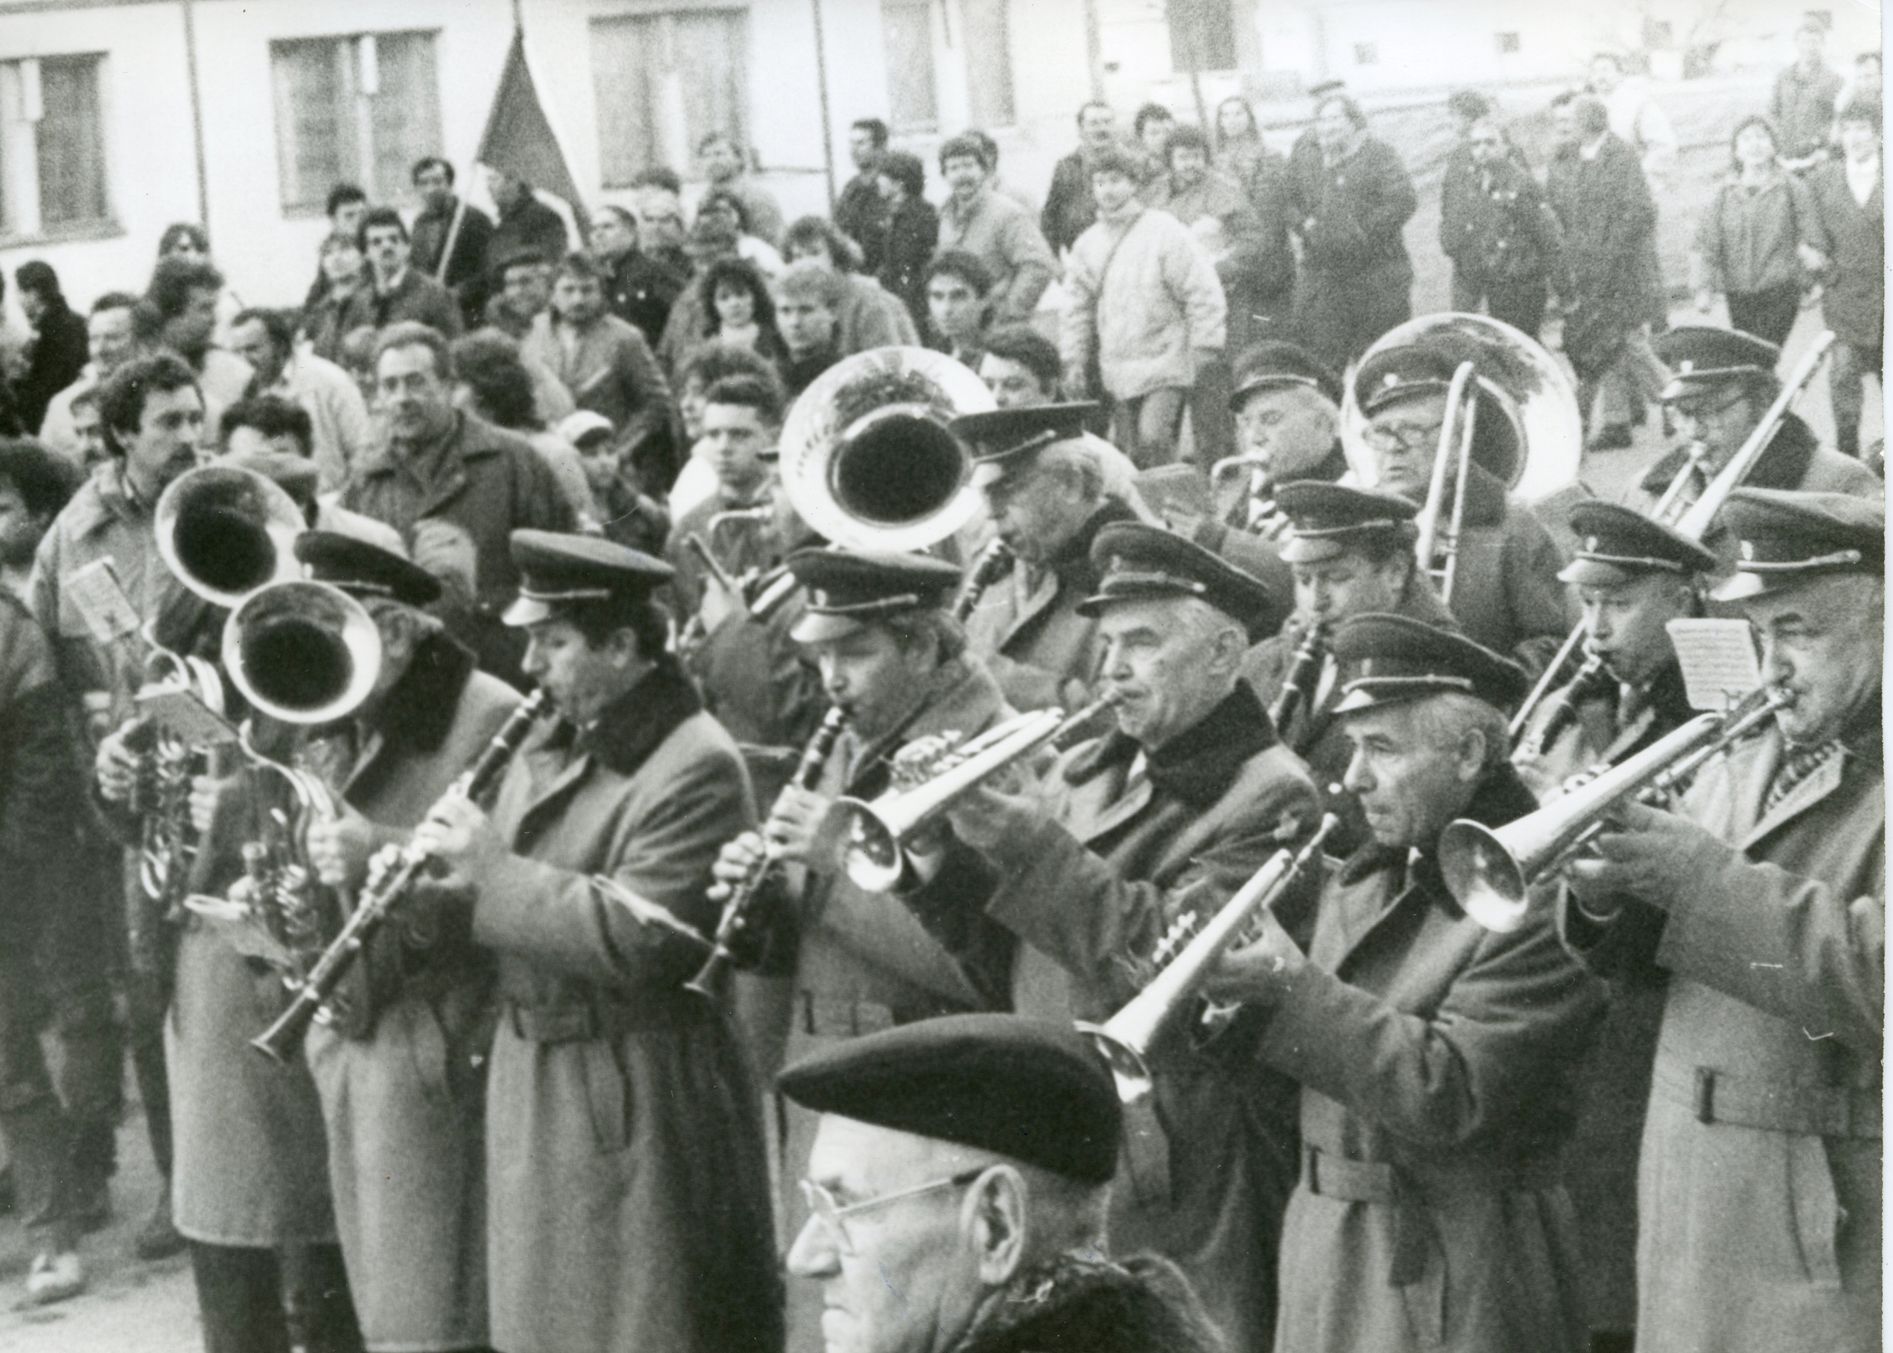 Pochod po 30. letech proti Sovětské okupaci a vojsku ve městě - Vysoké Mýto - archiv 1990